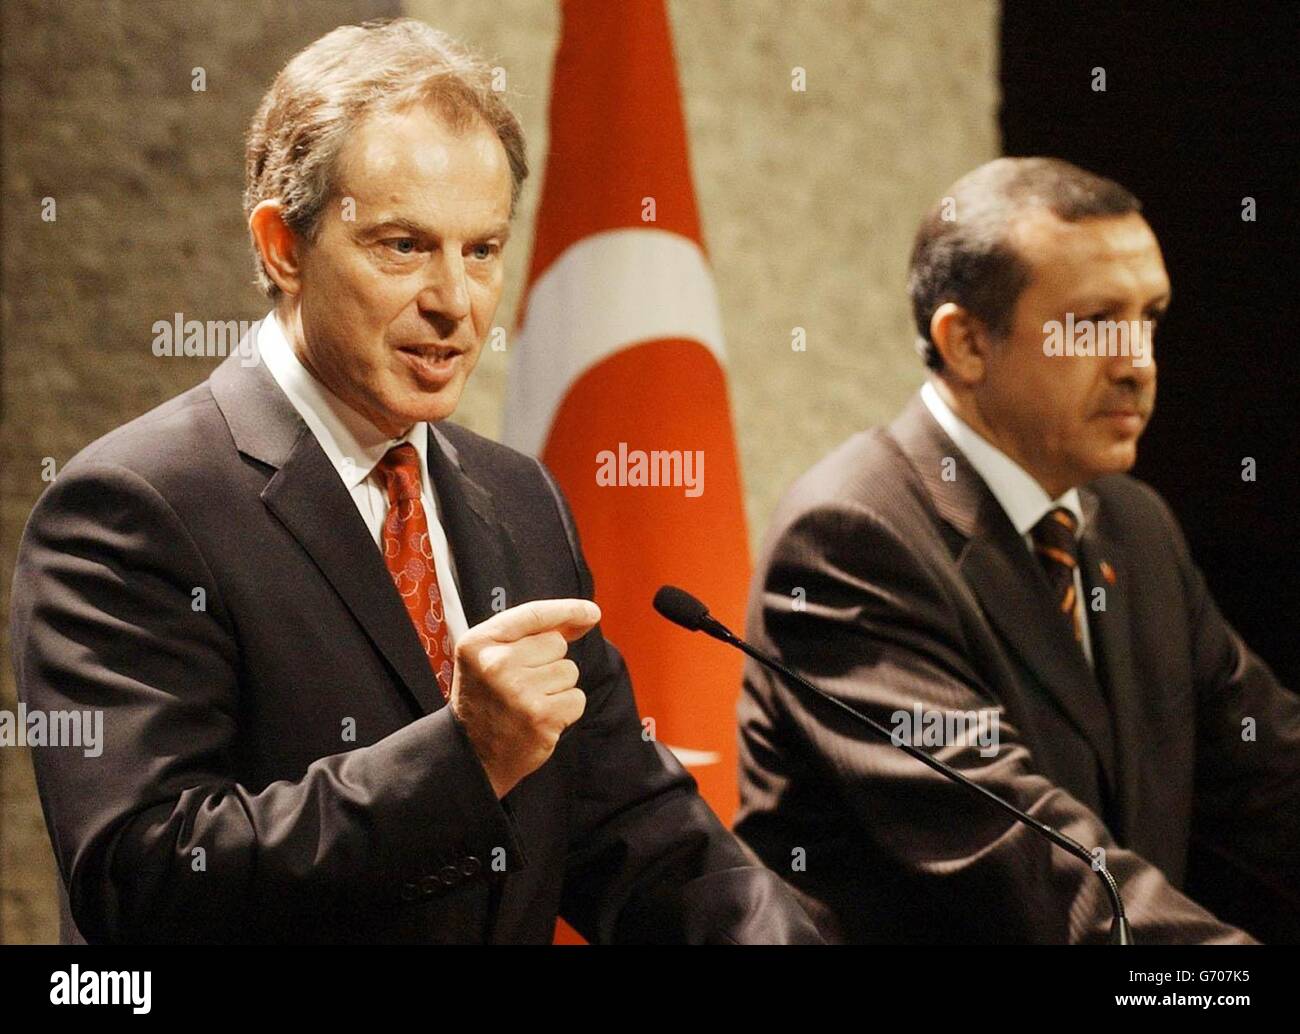 Il primo ministro Tony Blair chiede la fine delle sanzioni commerciali e la revoca del divieto sui voli commerciali per Cipro settentrionale controllata dalla Turchia durante una conferenza stampa ad Ankara con il primo ministro turco Recep Erdogan. Foto Stock